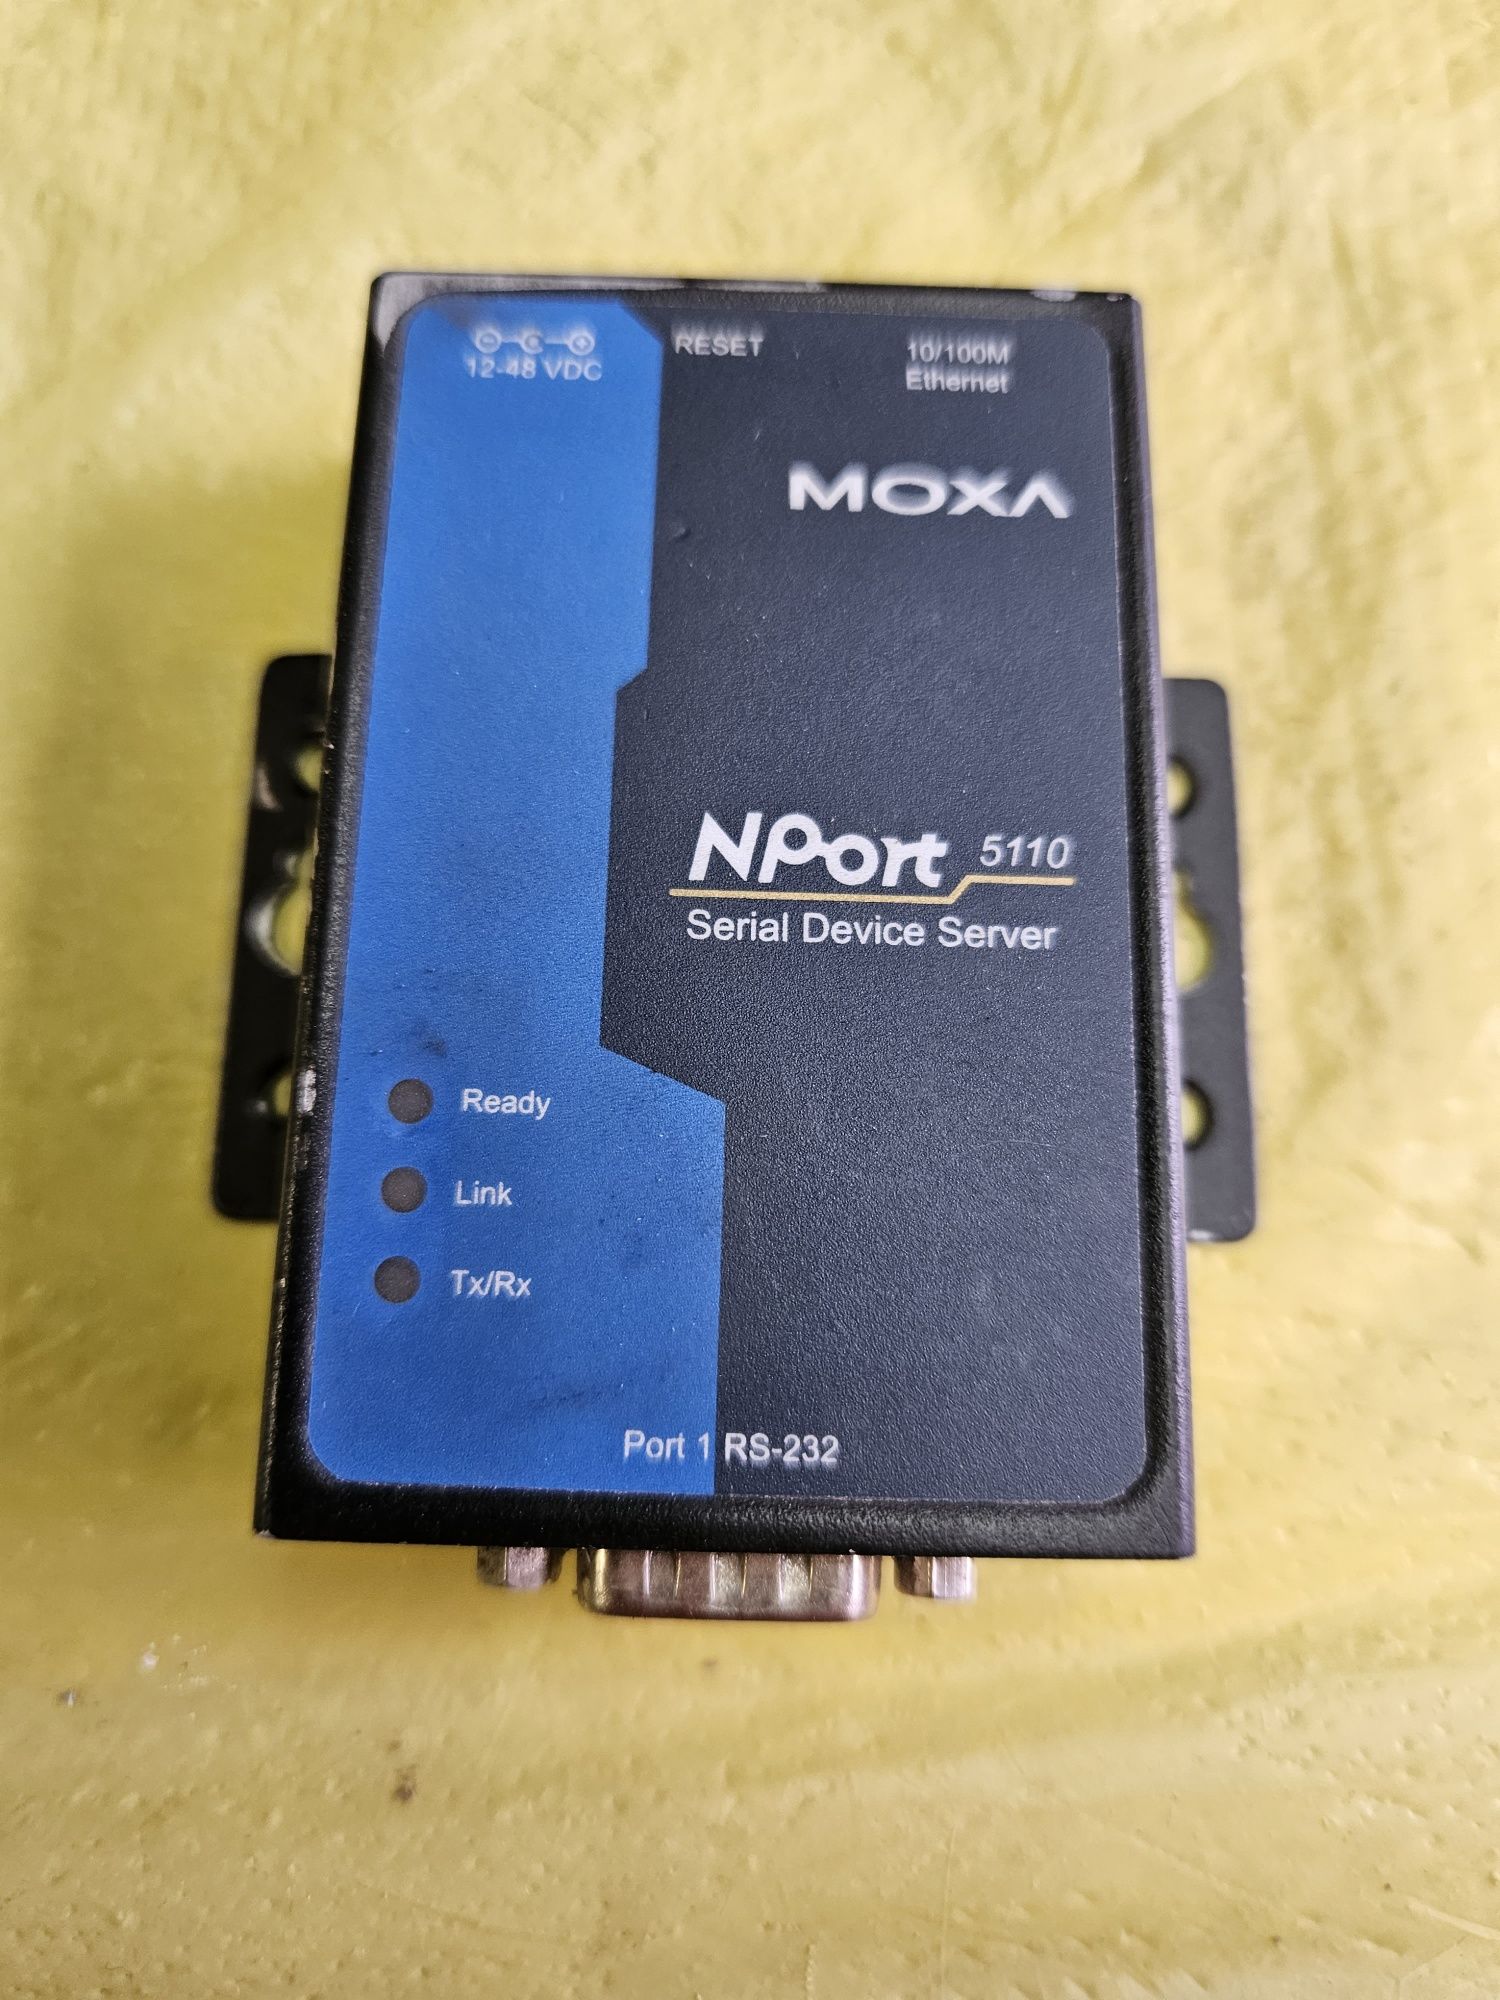 Moxa Nport 5110 в рабочем состоянии